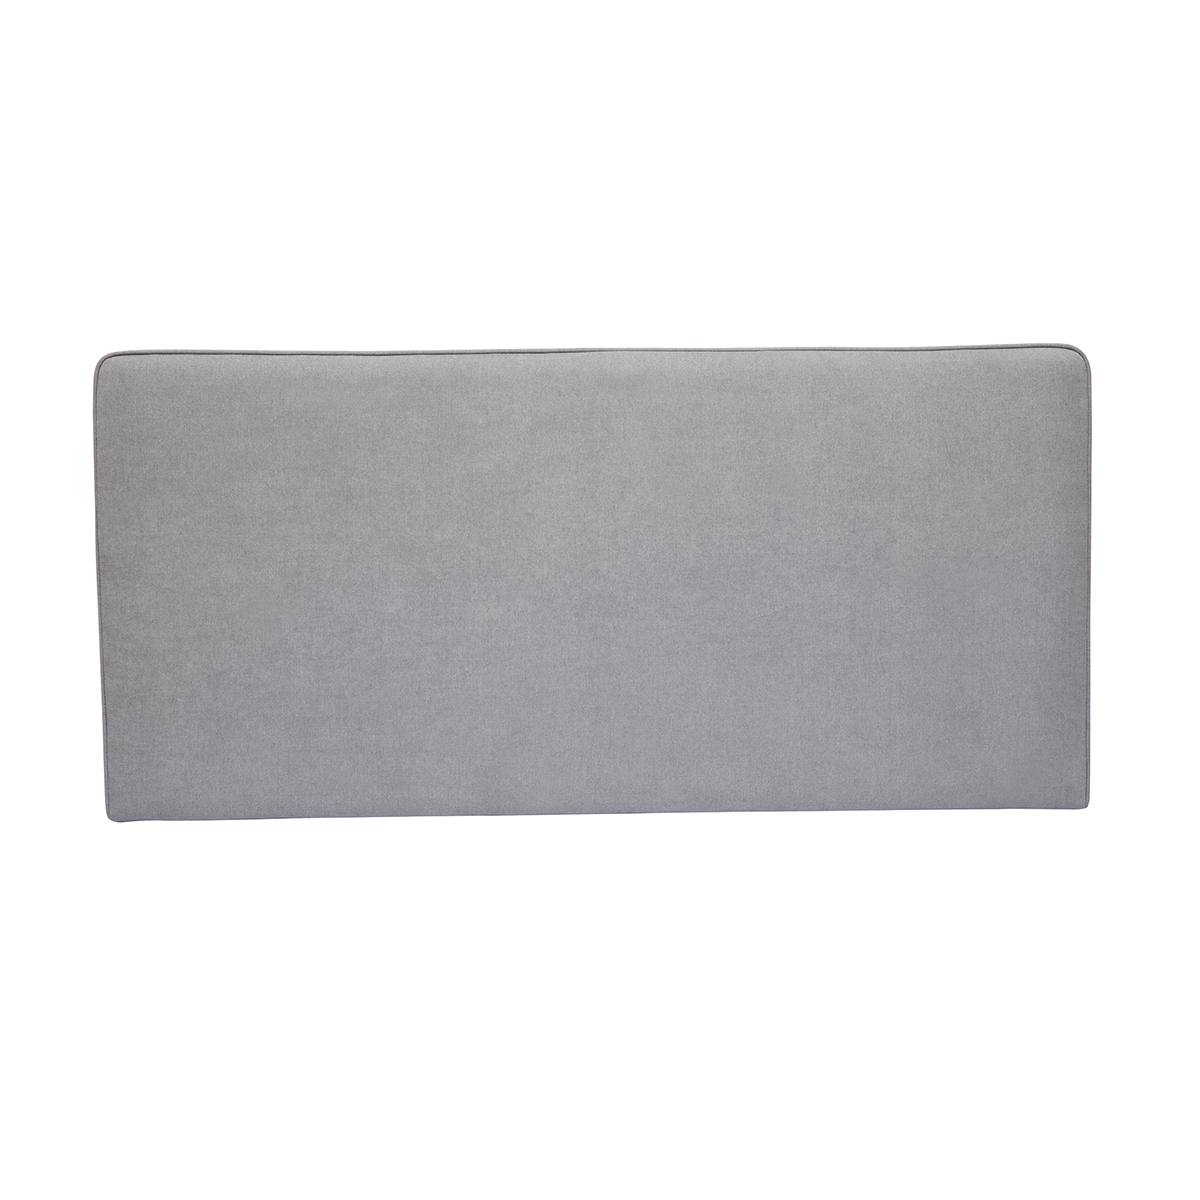 Testata letto a muro in tessuto effetto velluto grigio L160 cm LILY